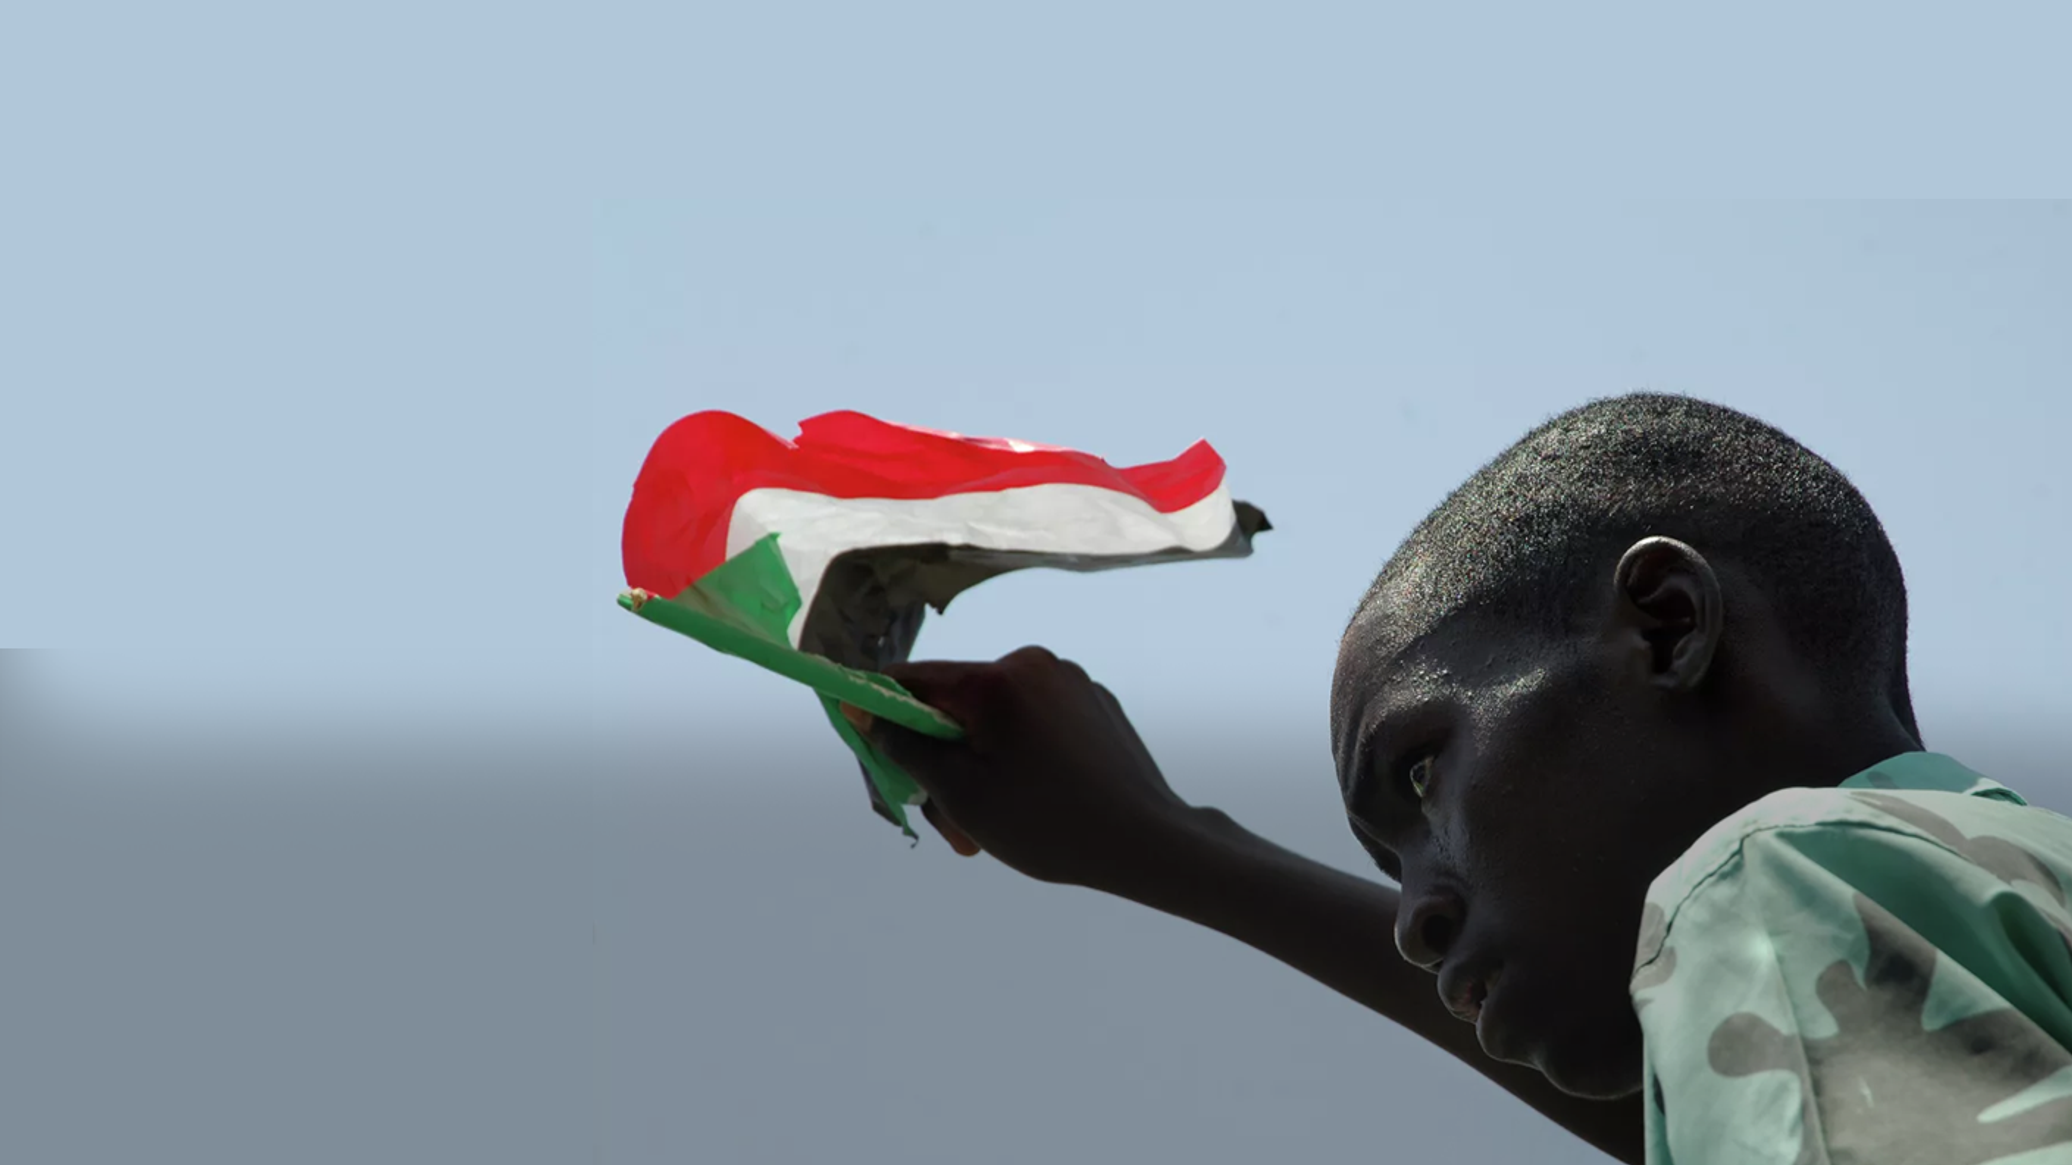 السودان... توقيع الاتفاق السياسي النهائي أول إبريل المقبل وتشكيل الحكومة المدنية بعدها بعشرة أيام